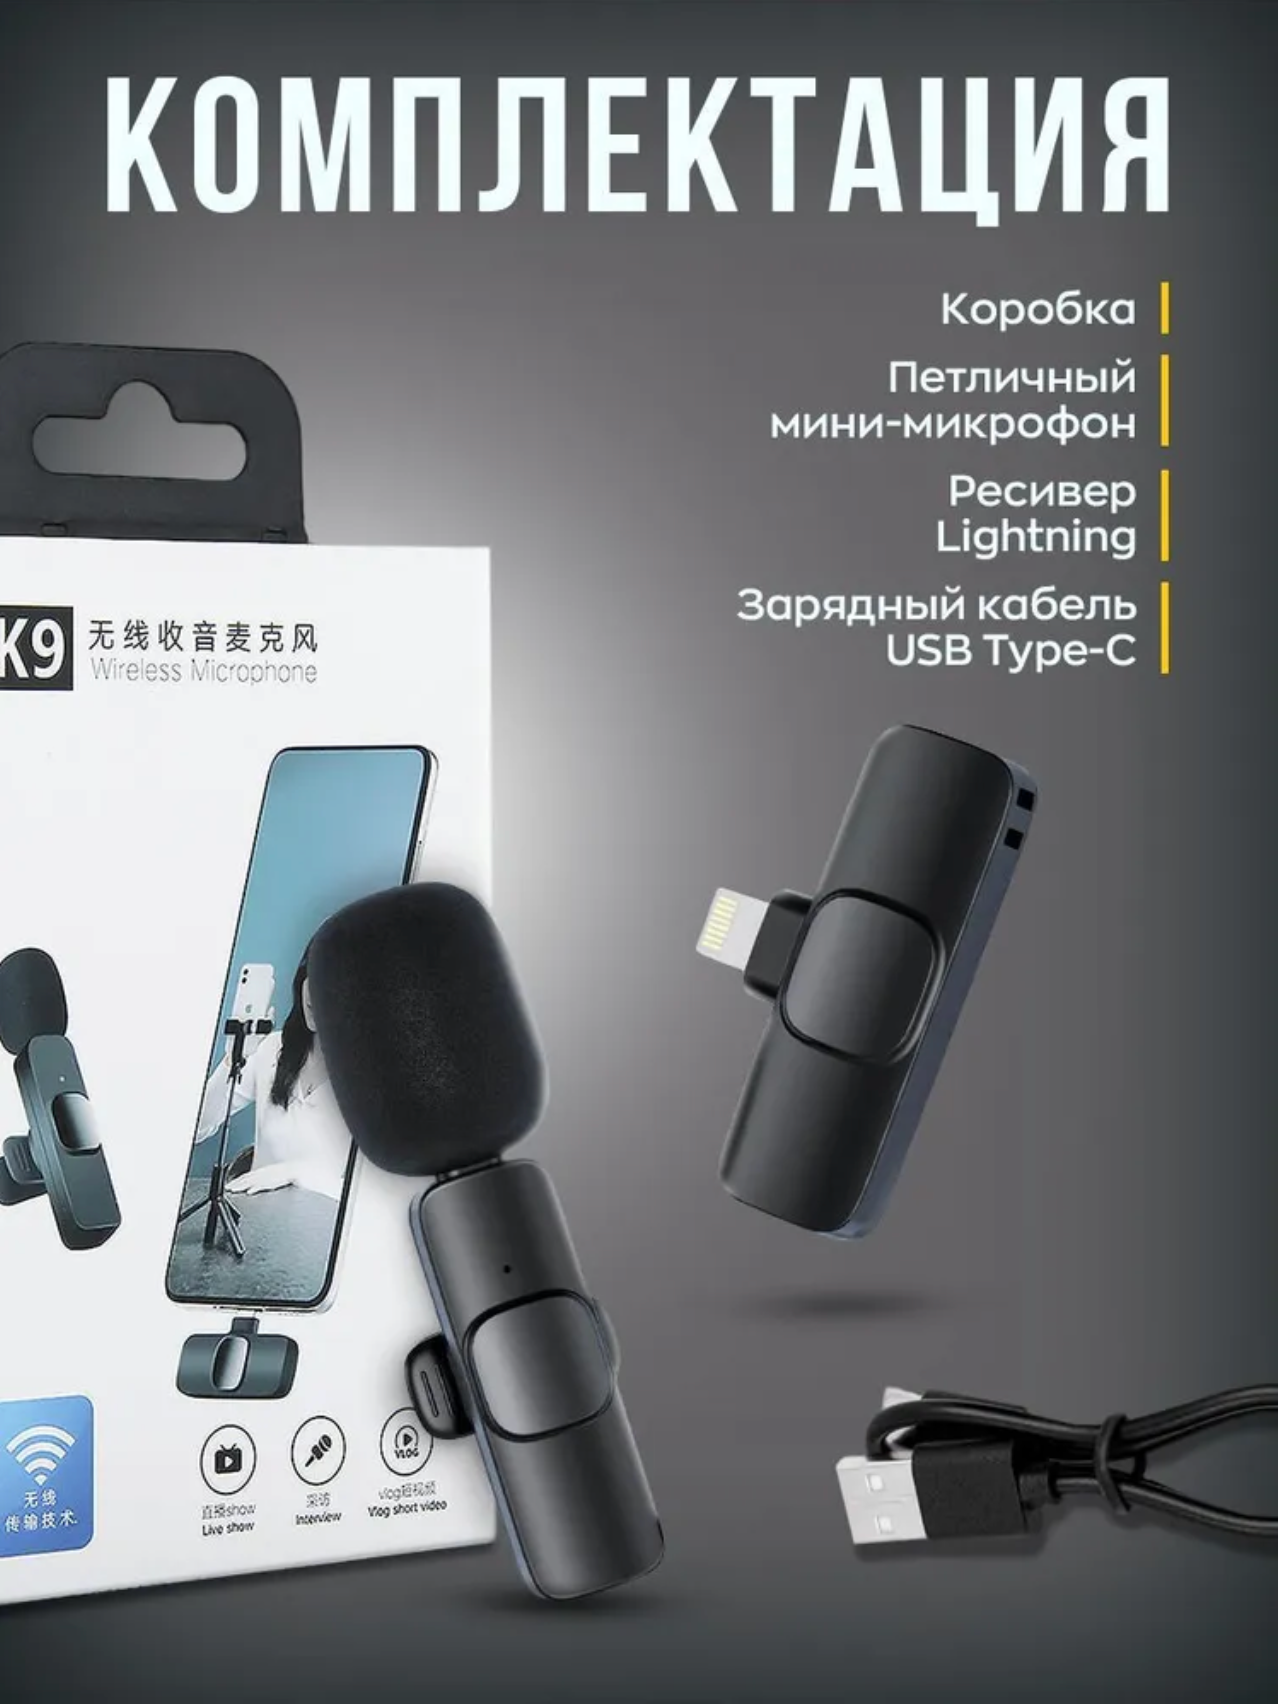 Микрофон Беспроводной петличный Lightning Microphone  петличка для iPhone и iPad цвет черный